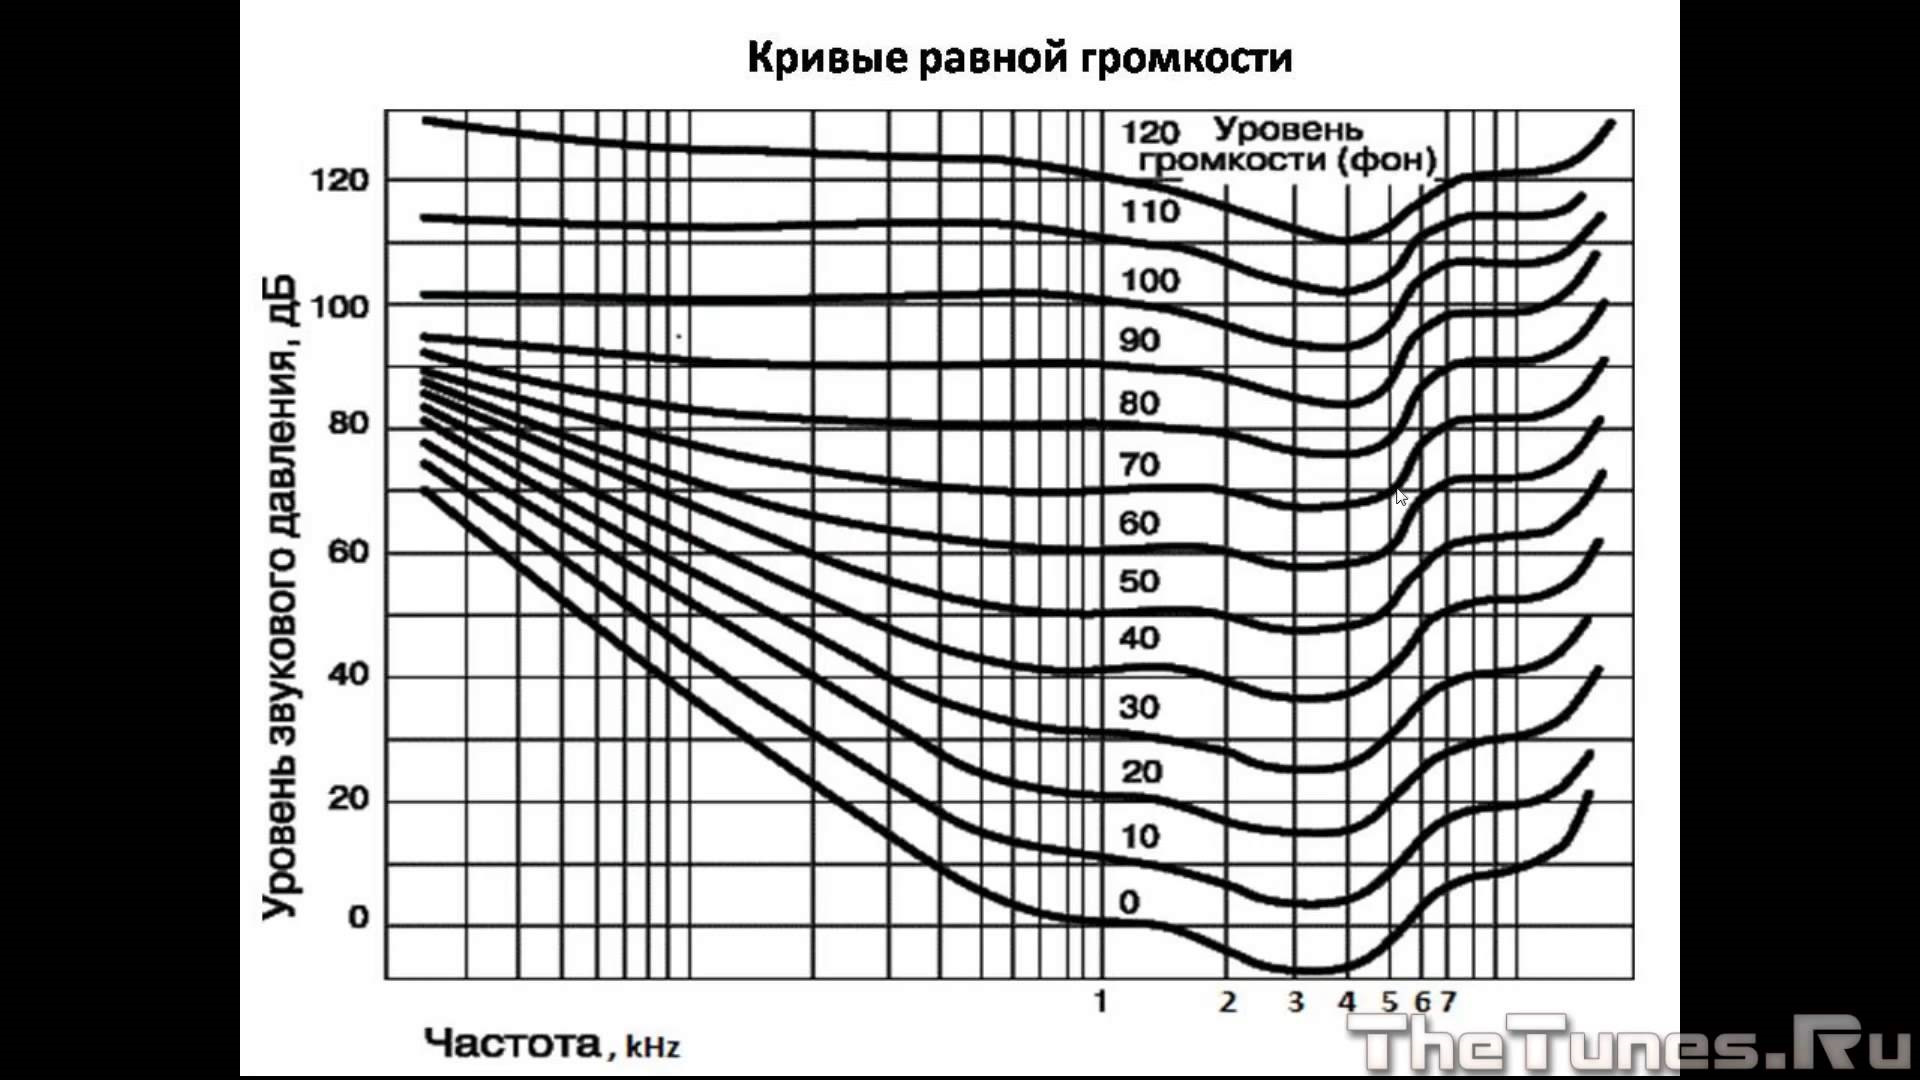 Частота человека как определить. Кривая равной громкости Флетчера мэнсона. График Флетчера мэнсона. АЧХ человеческого уха график. Кривая АЧХ громкости.